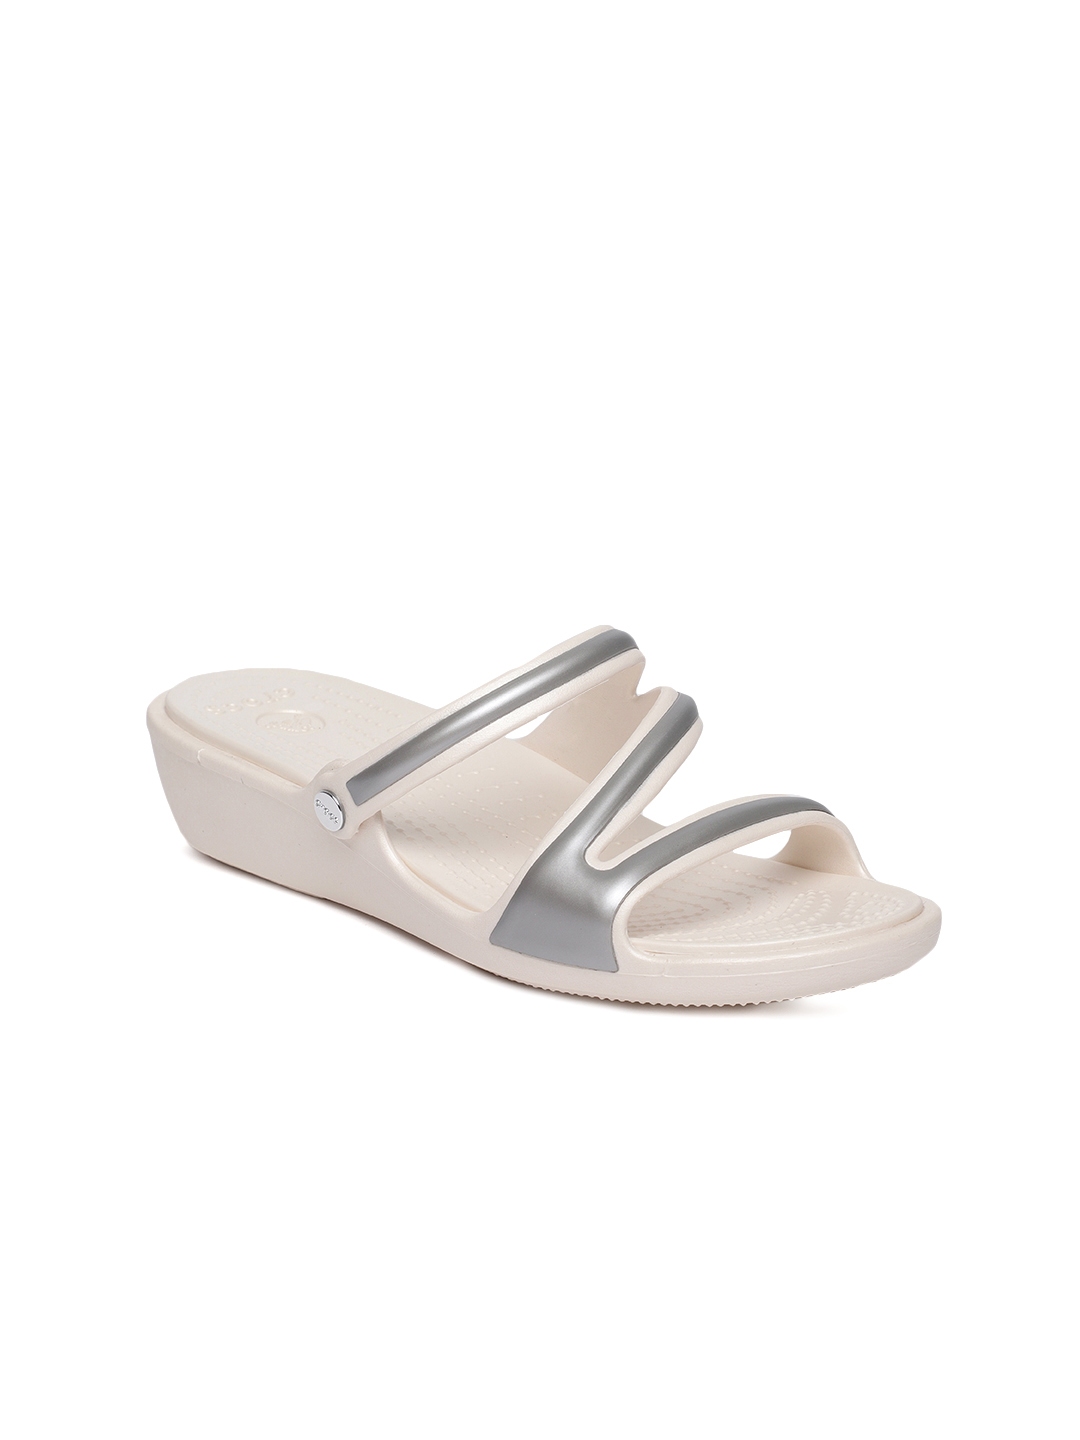 Crocs Women White Solid Sandals - Heels 